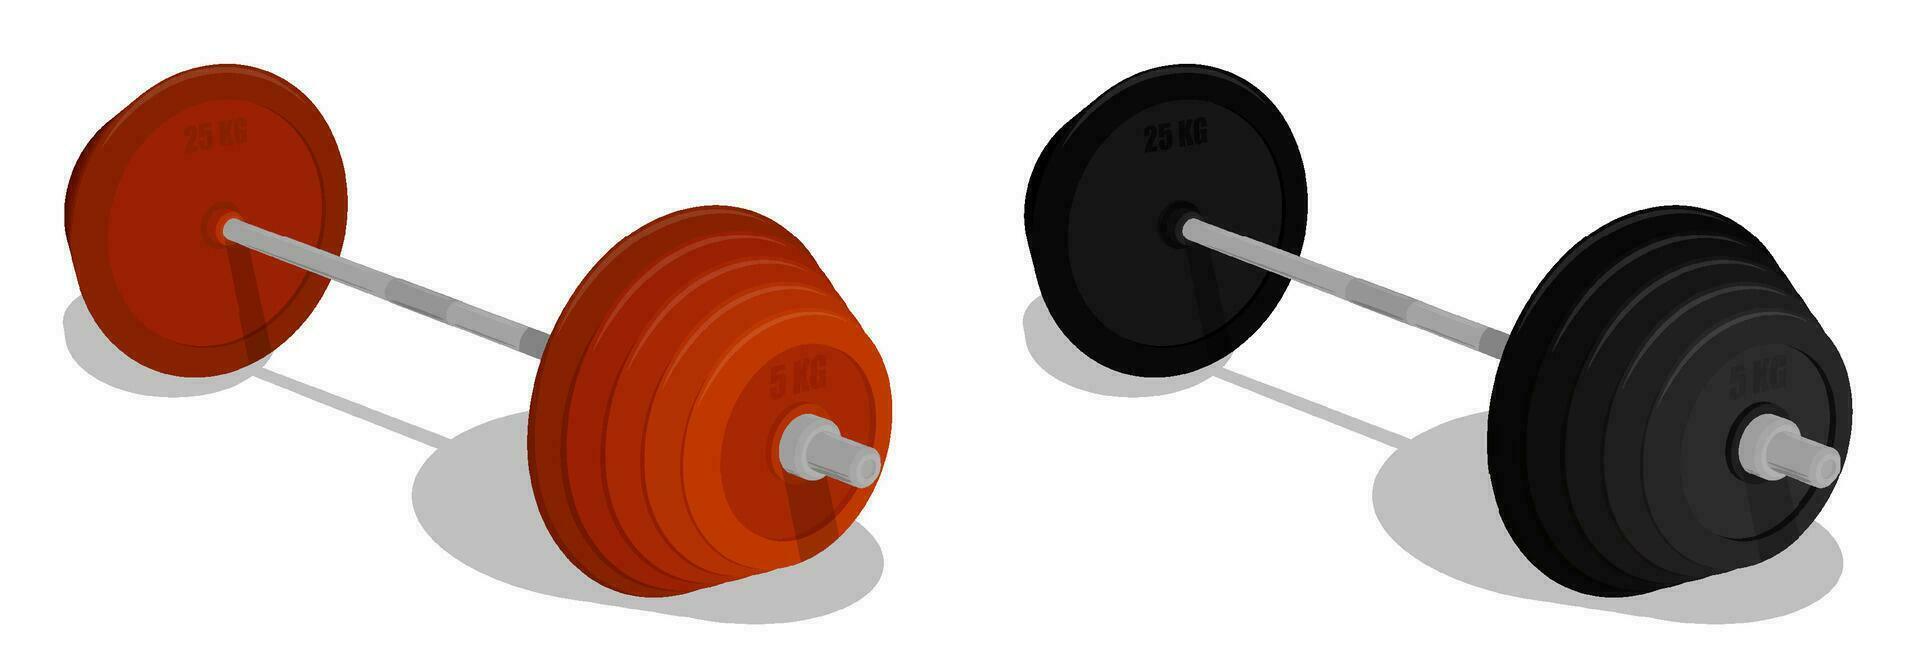 Deportes barra con pesas. sano estilo de vida, aptitud y cuerpo edificio en gimnasia. dibujos animados vector